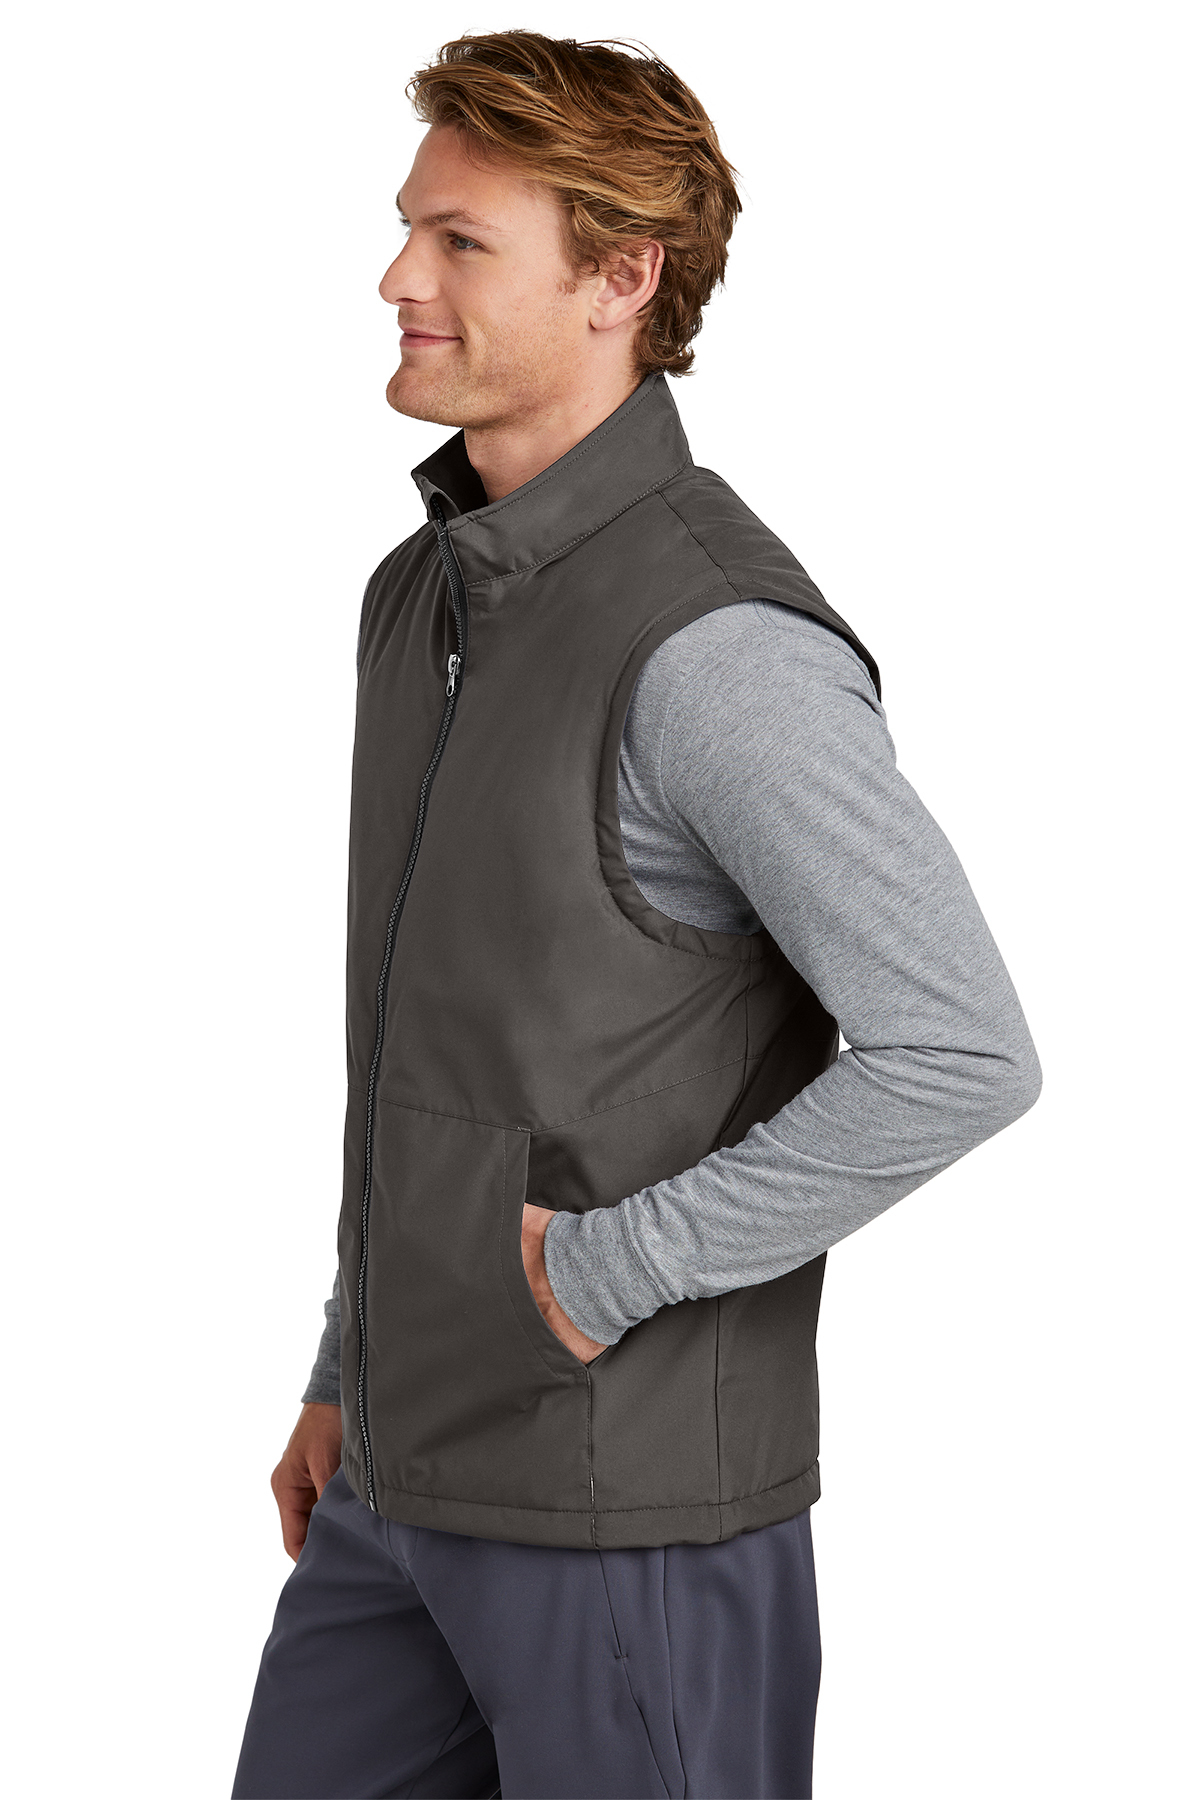 Sport-Tek Insulated Vest | Product | SanMar